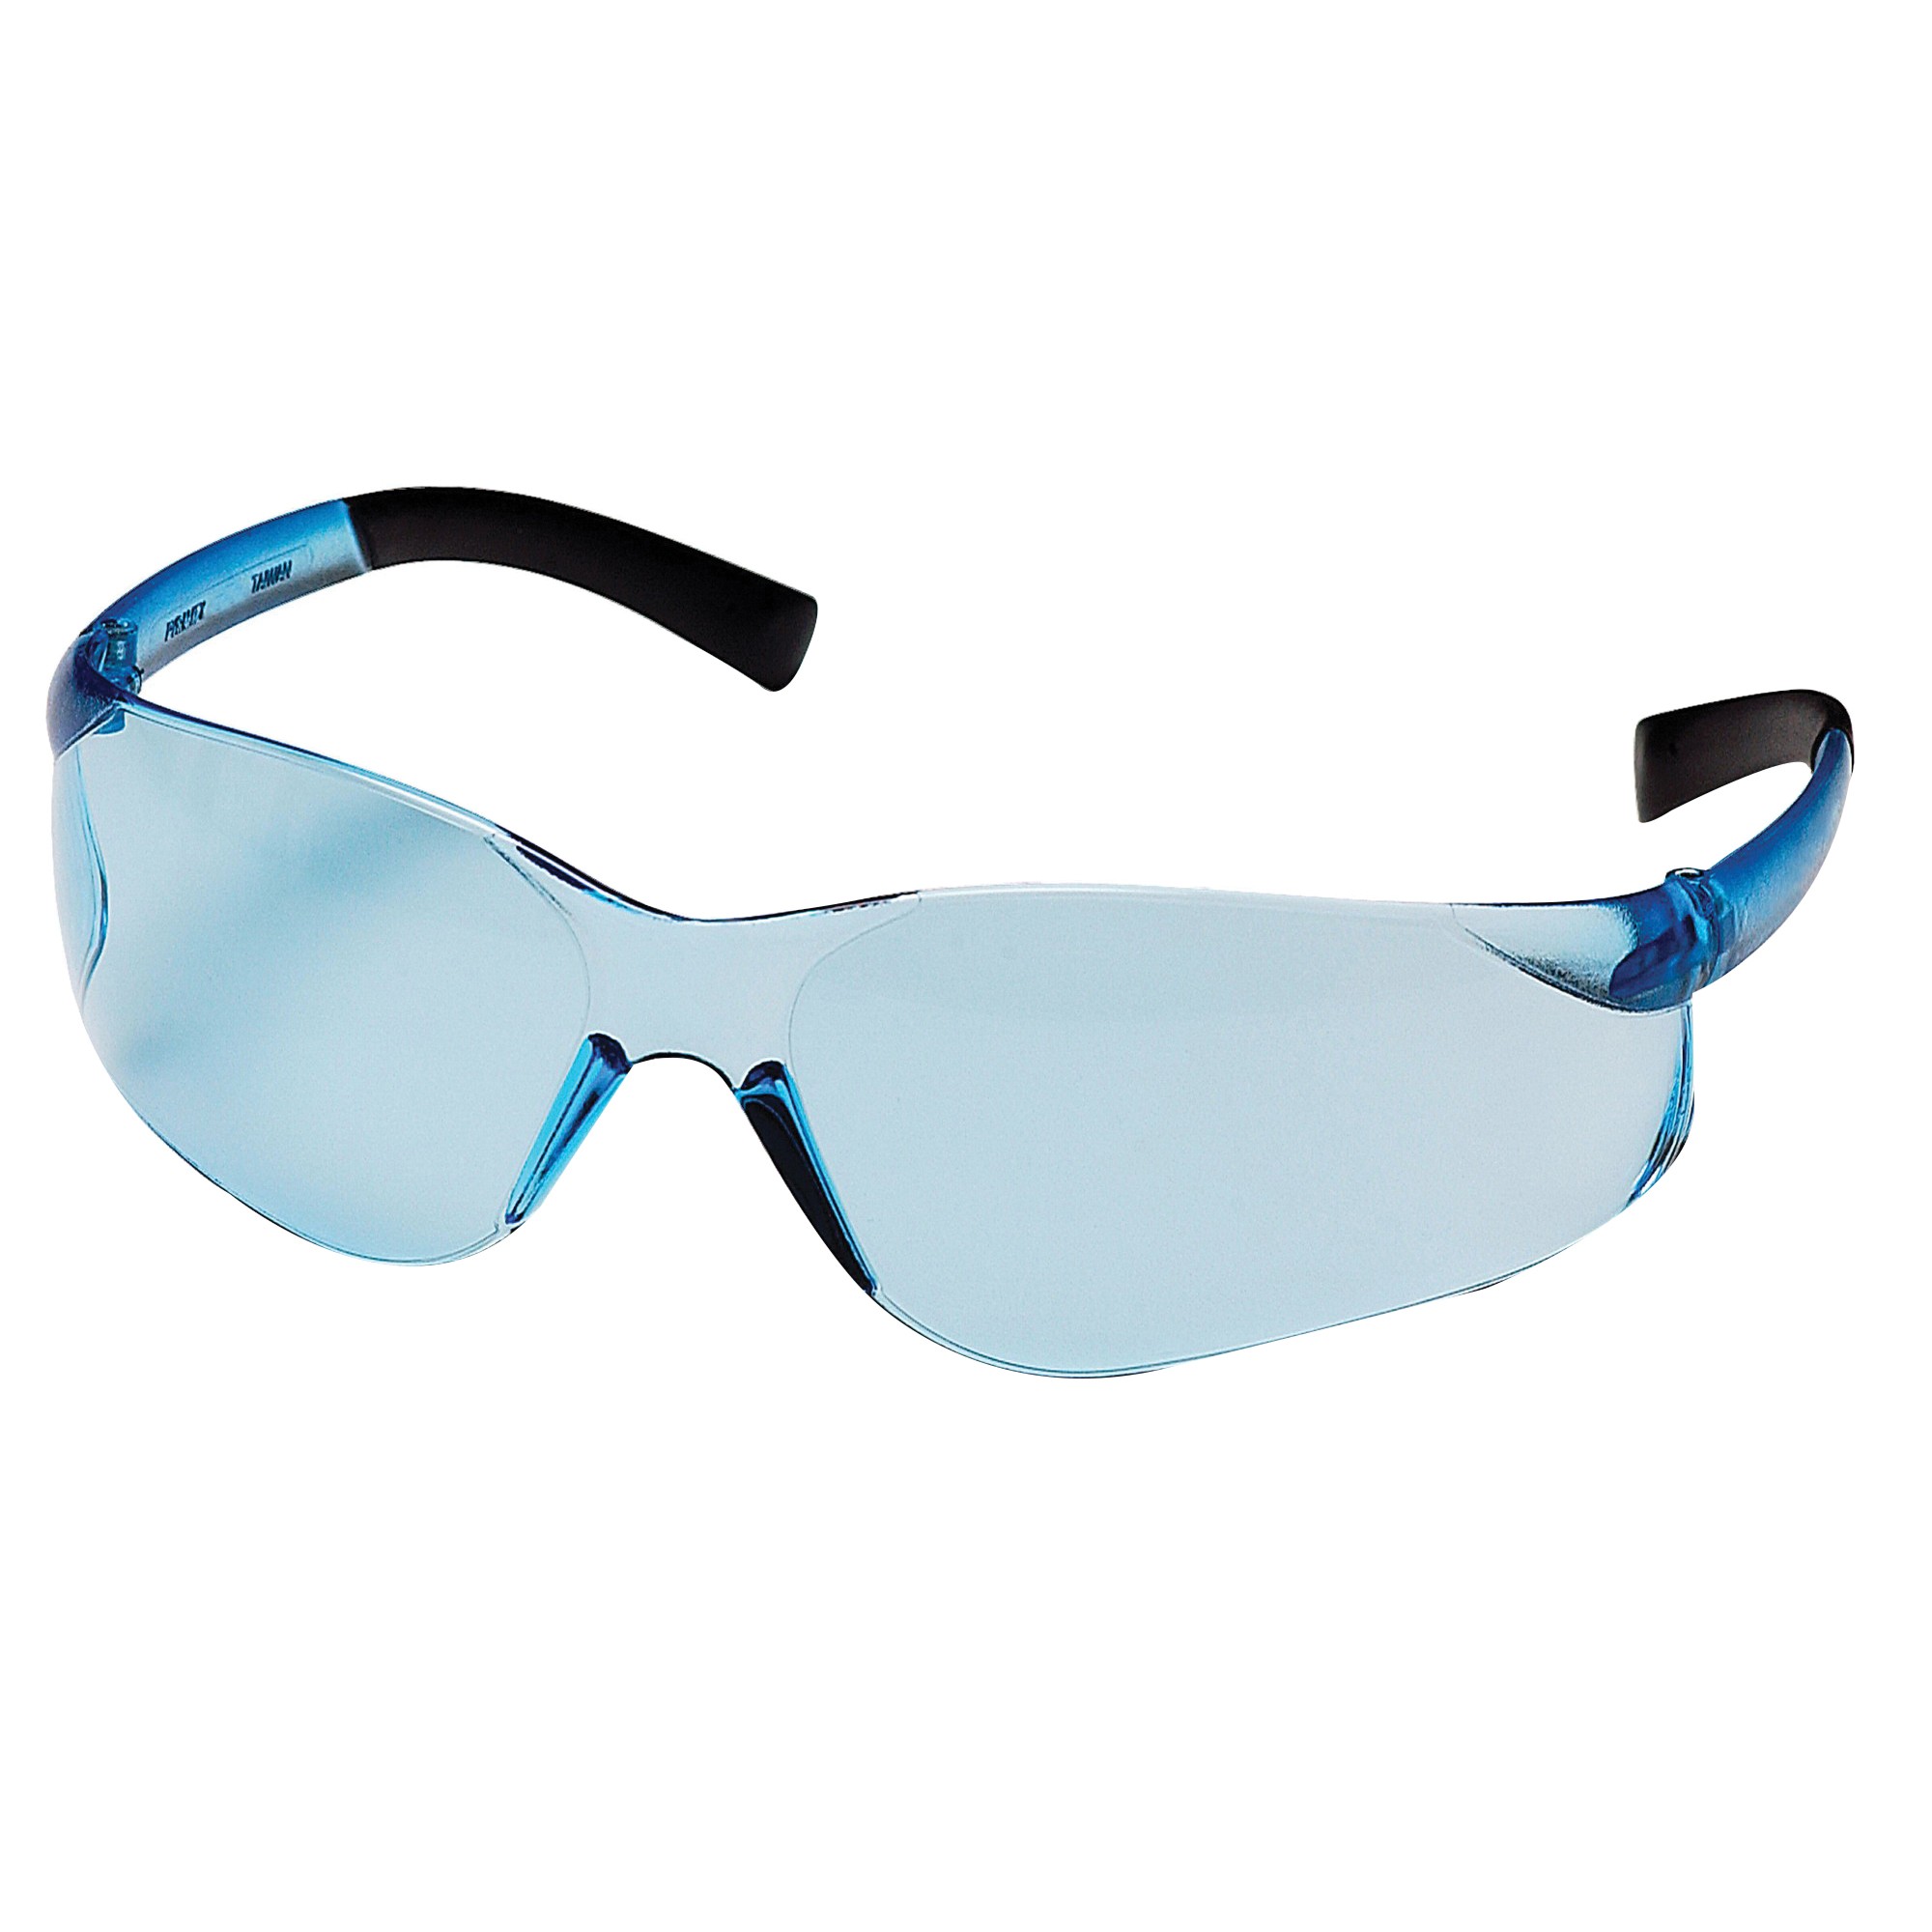 Ztek Safety Glasses With Blue Fr